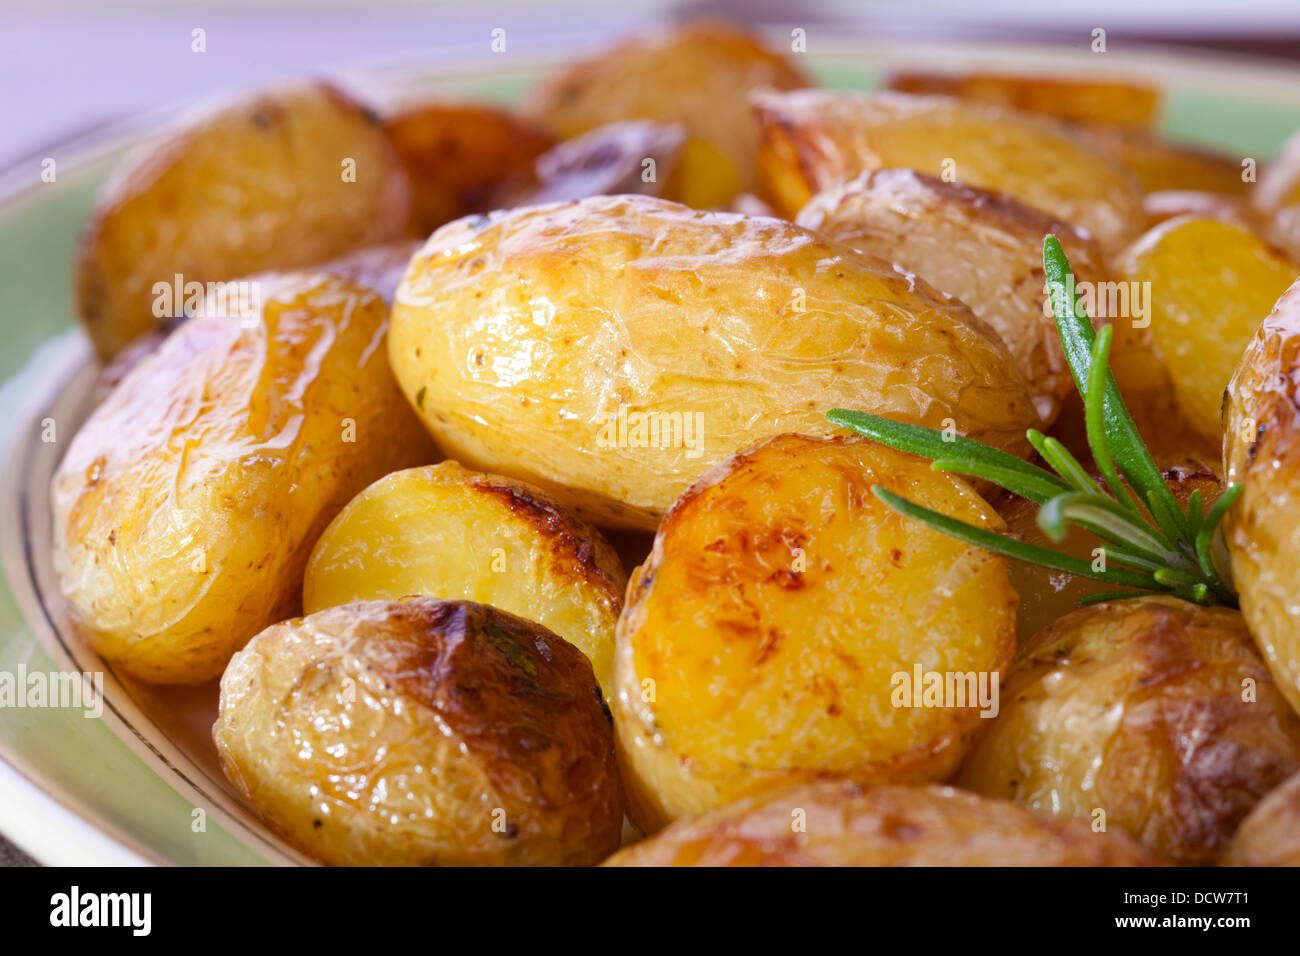 Arrosto di patate novelle al rosmarino - un piatto di arrosto di patate novelle al rosmarino. Foto Stock